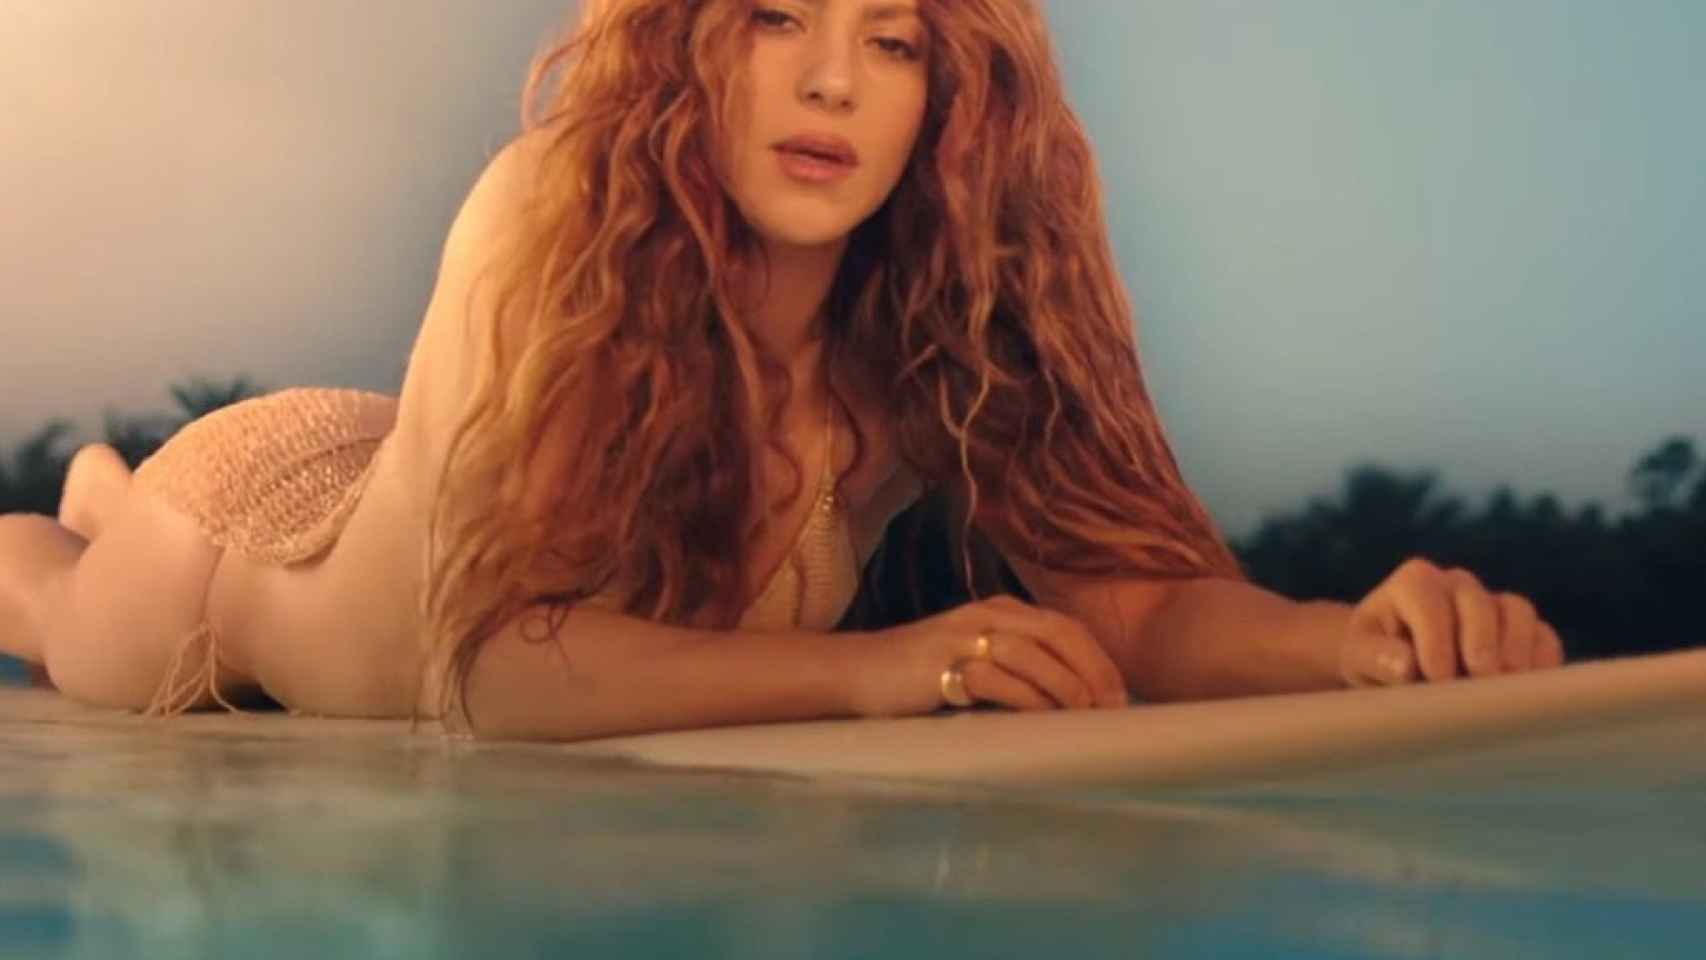 Shakira con su vestido transparente en una tabla de surf